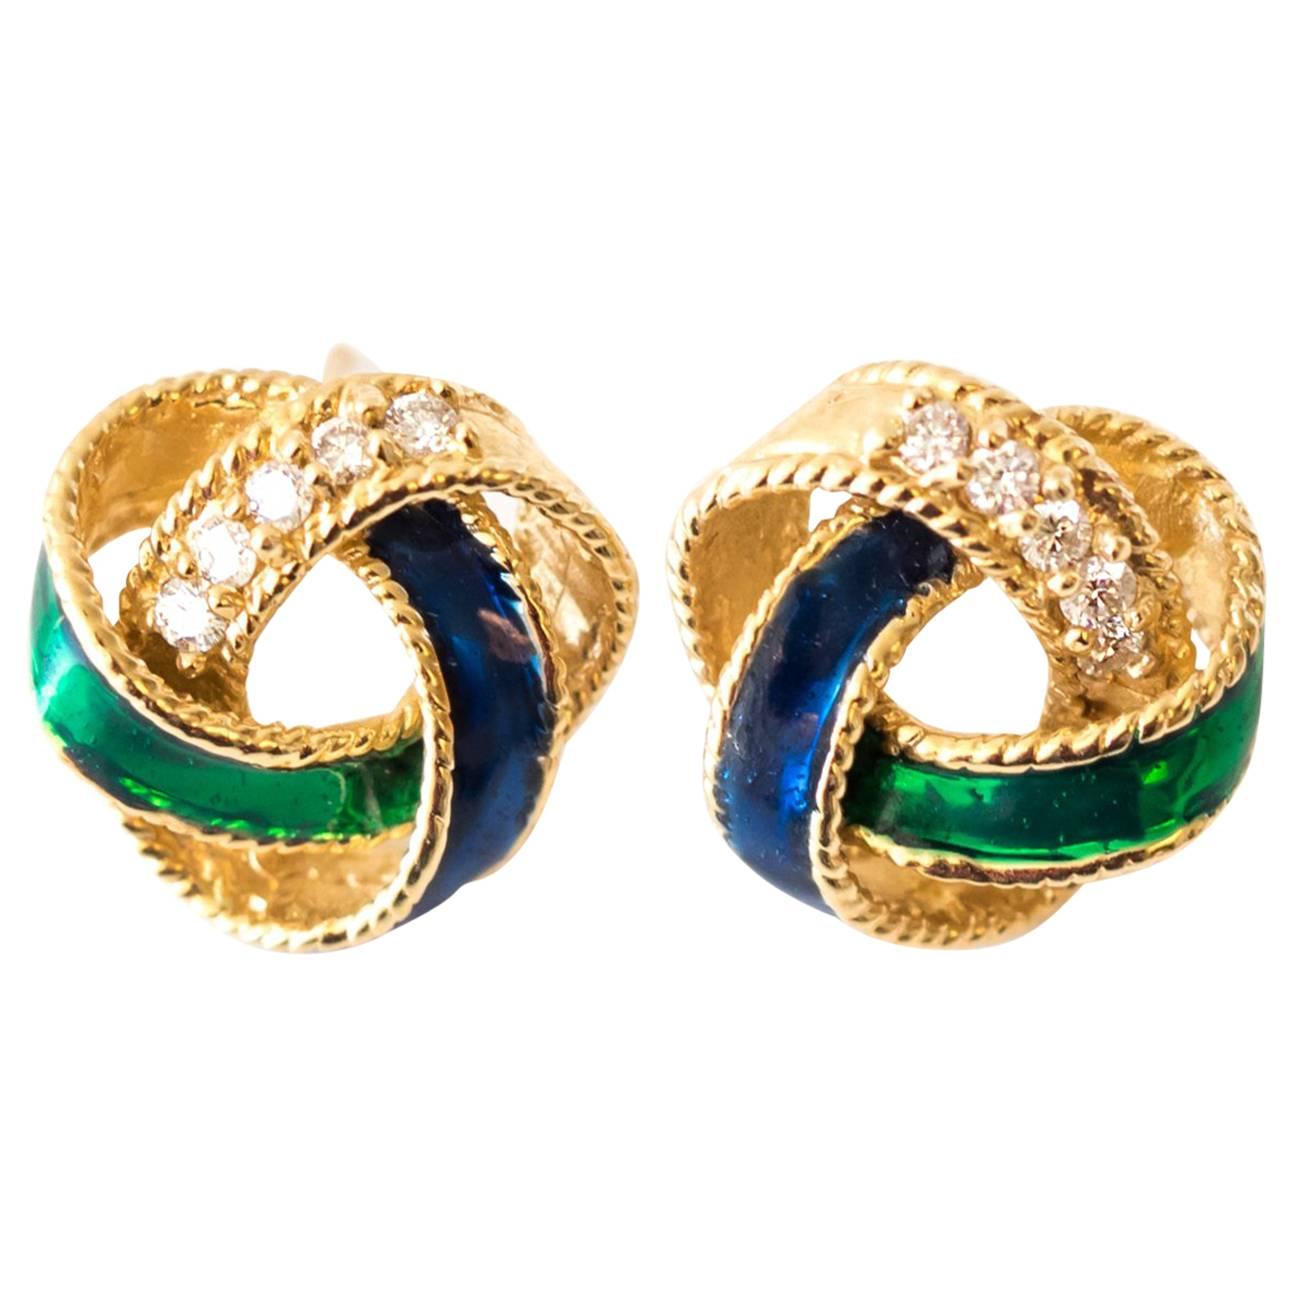 1950s Enamel Diamond Gold Wreath Stud Earrings